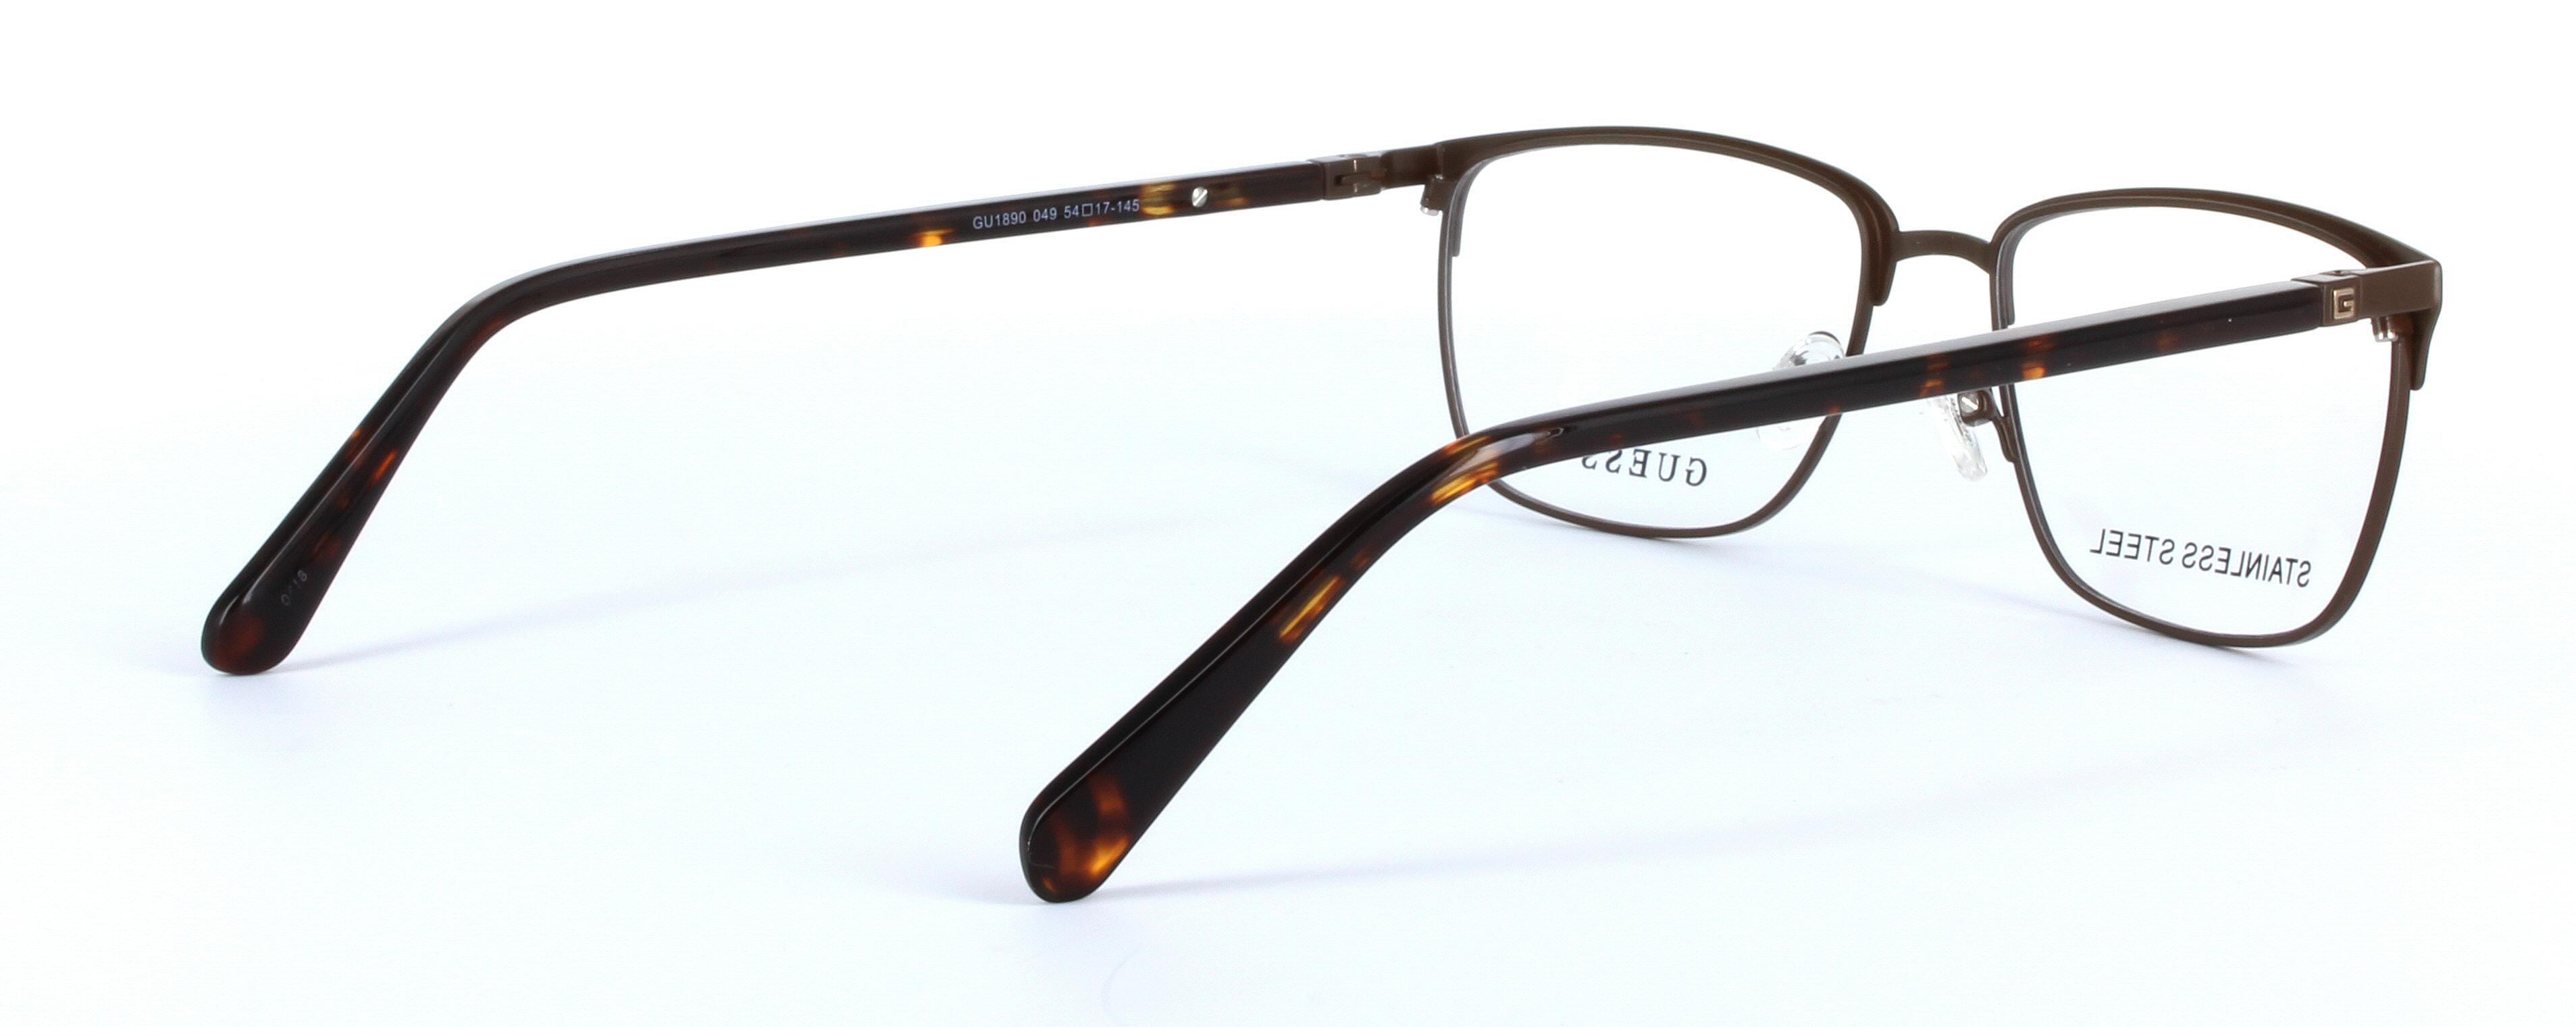 GUESS (GU1890-049) Brown Full Rim Oval Rectangular Metal Glasses - Image View 4